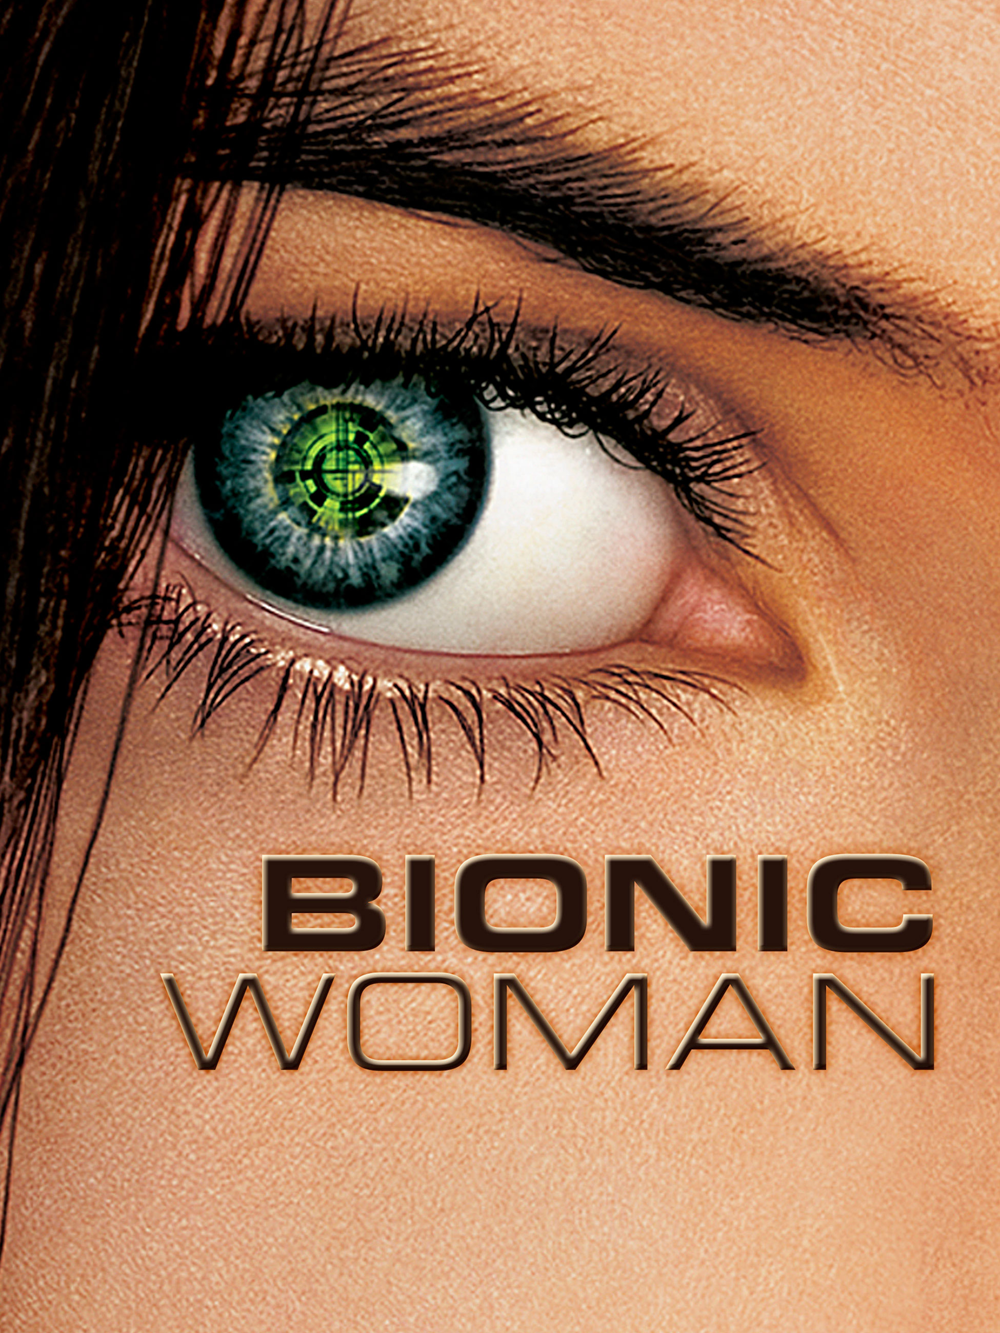 Bionic Woman, 2007-08